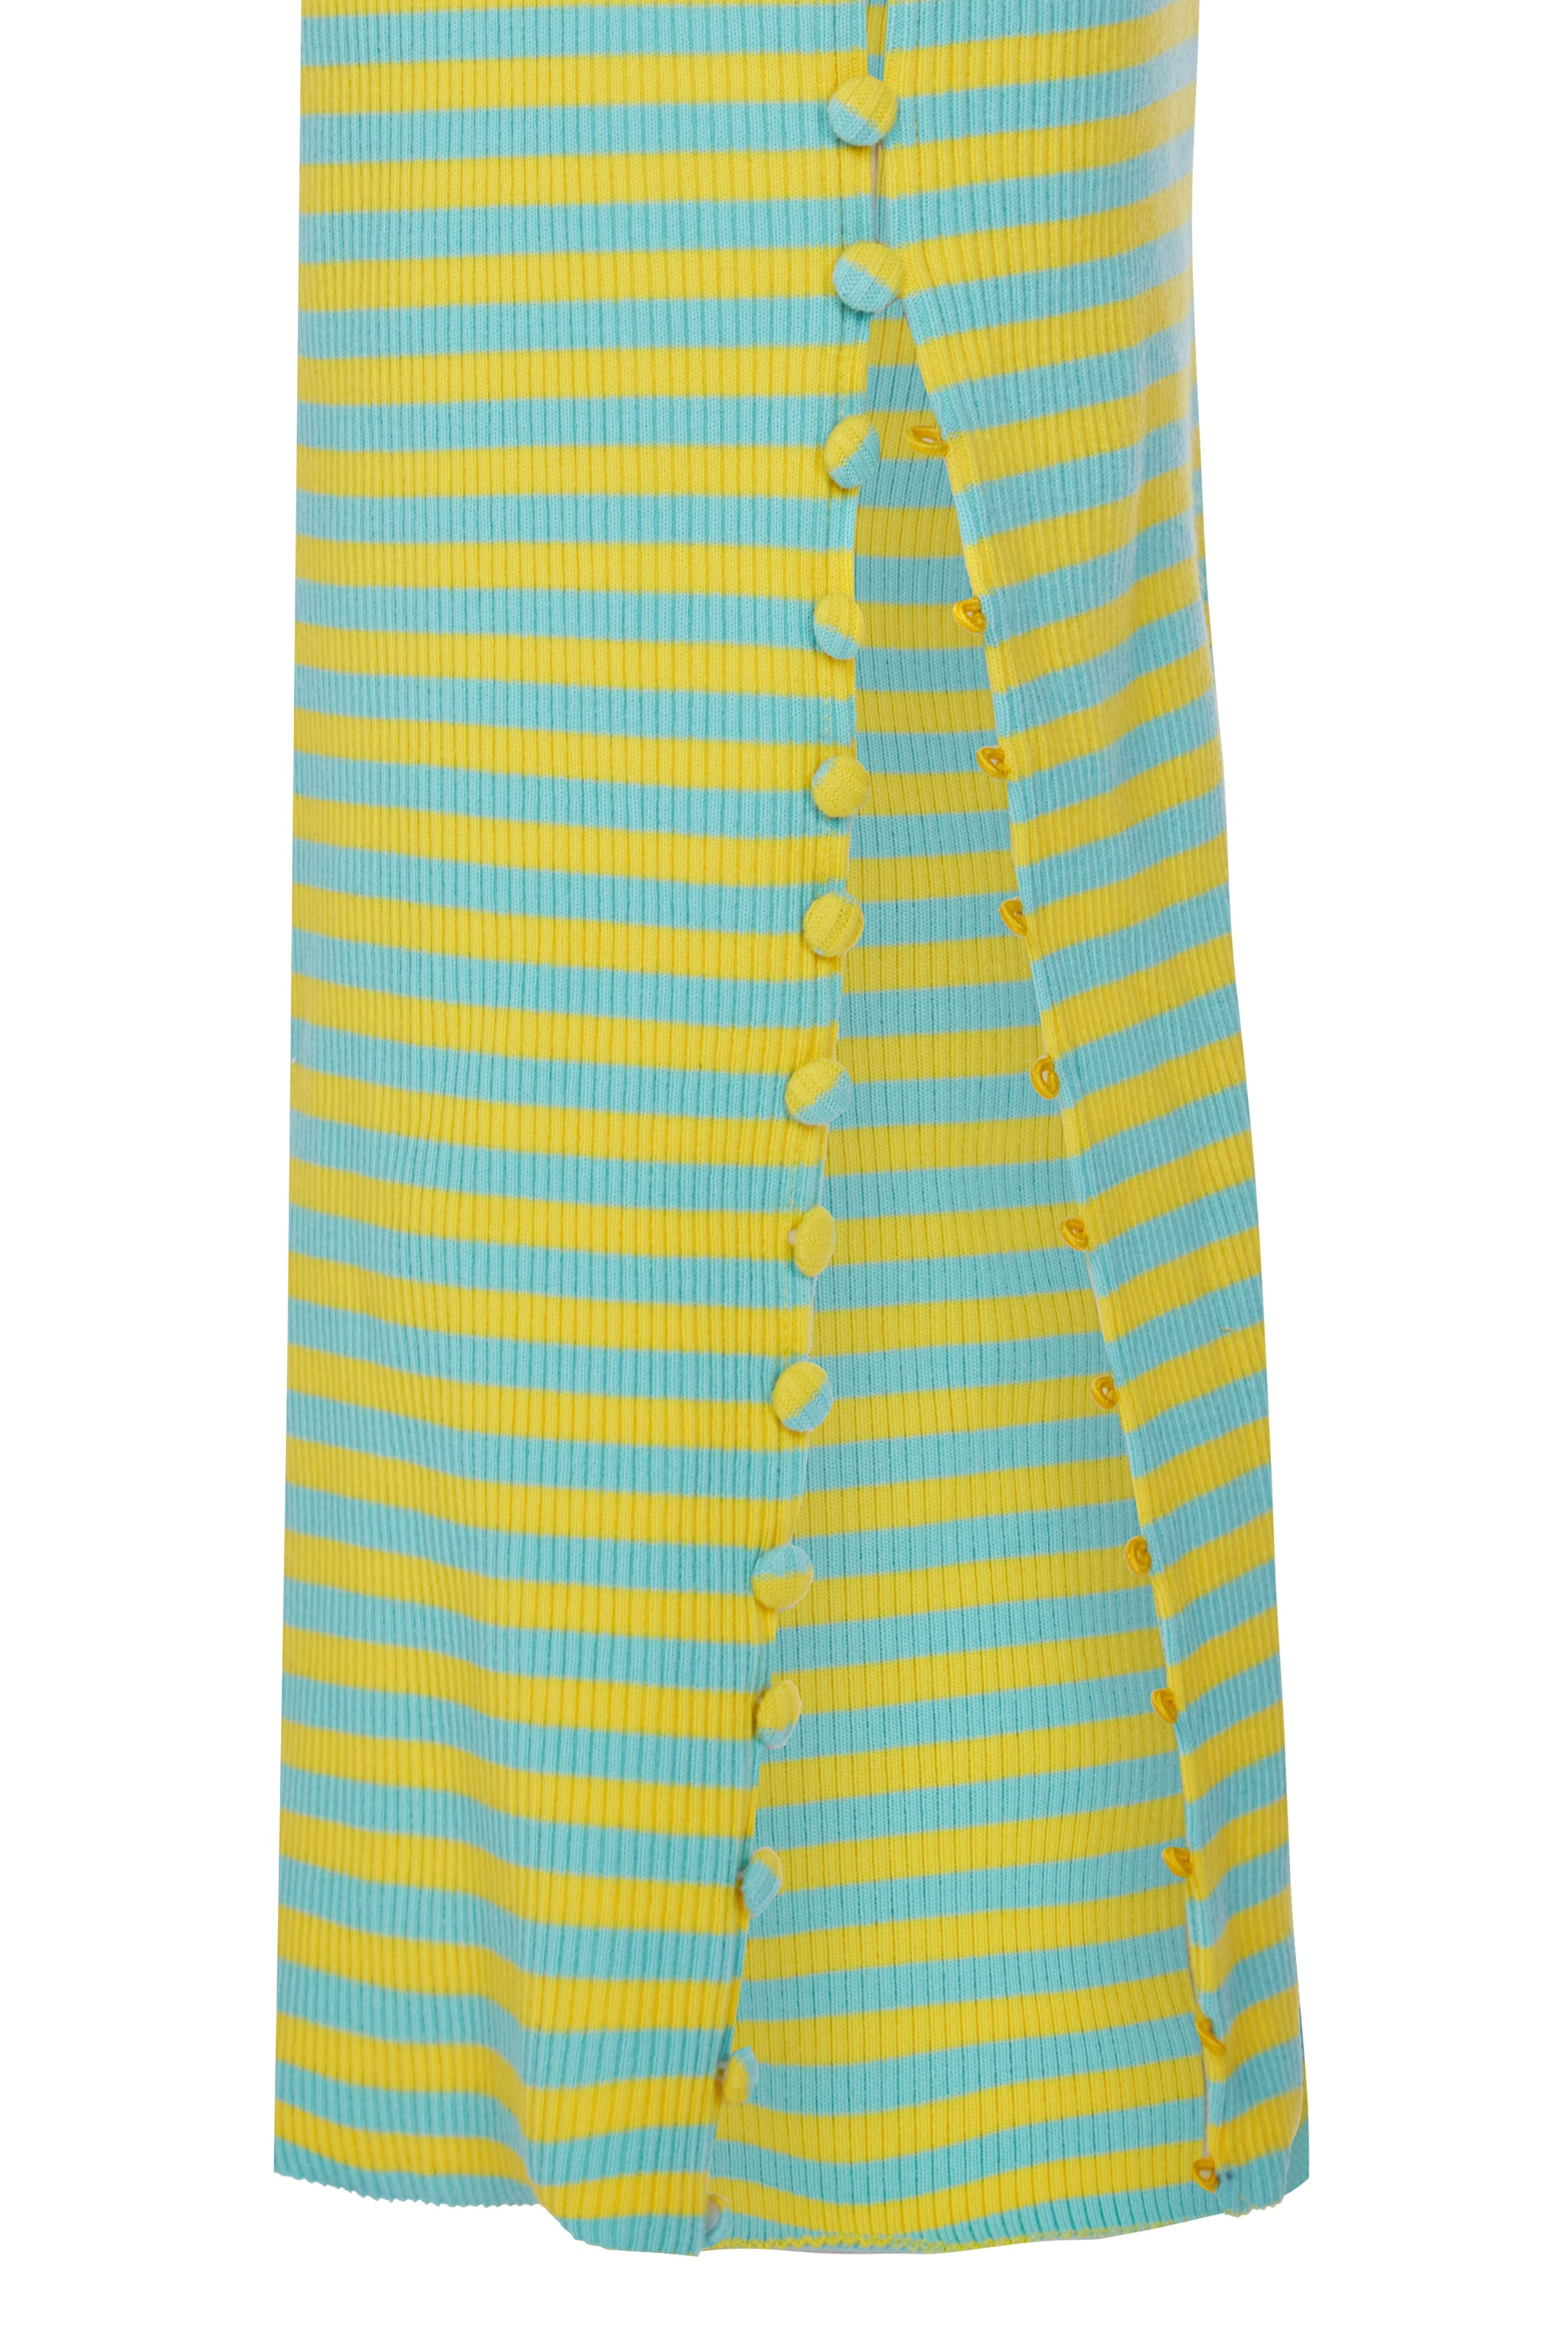 TWISTAH Stripe Button-down Midi Dress in Lemon and Lime